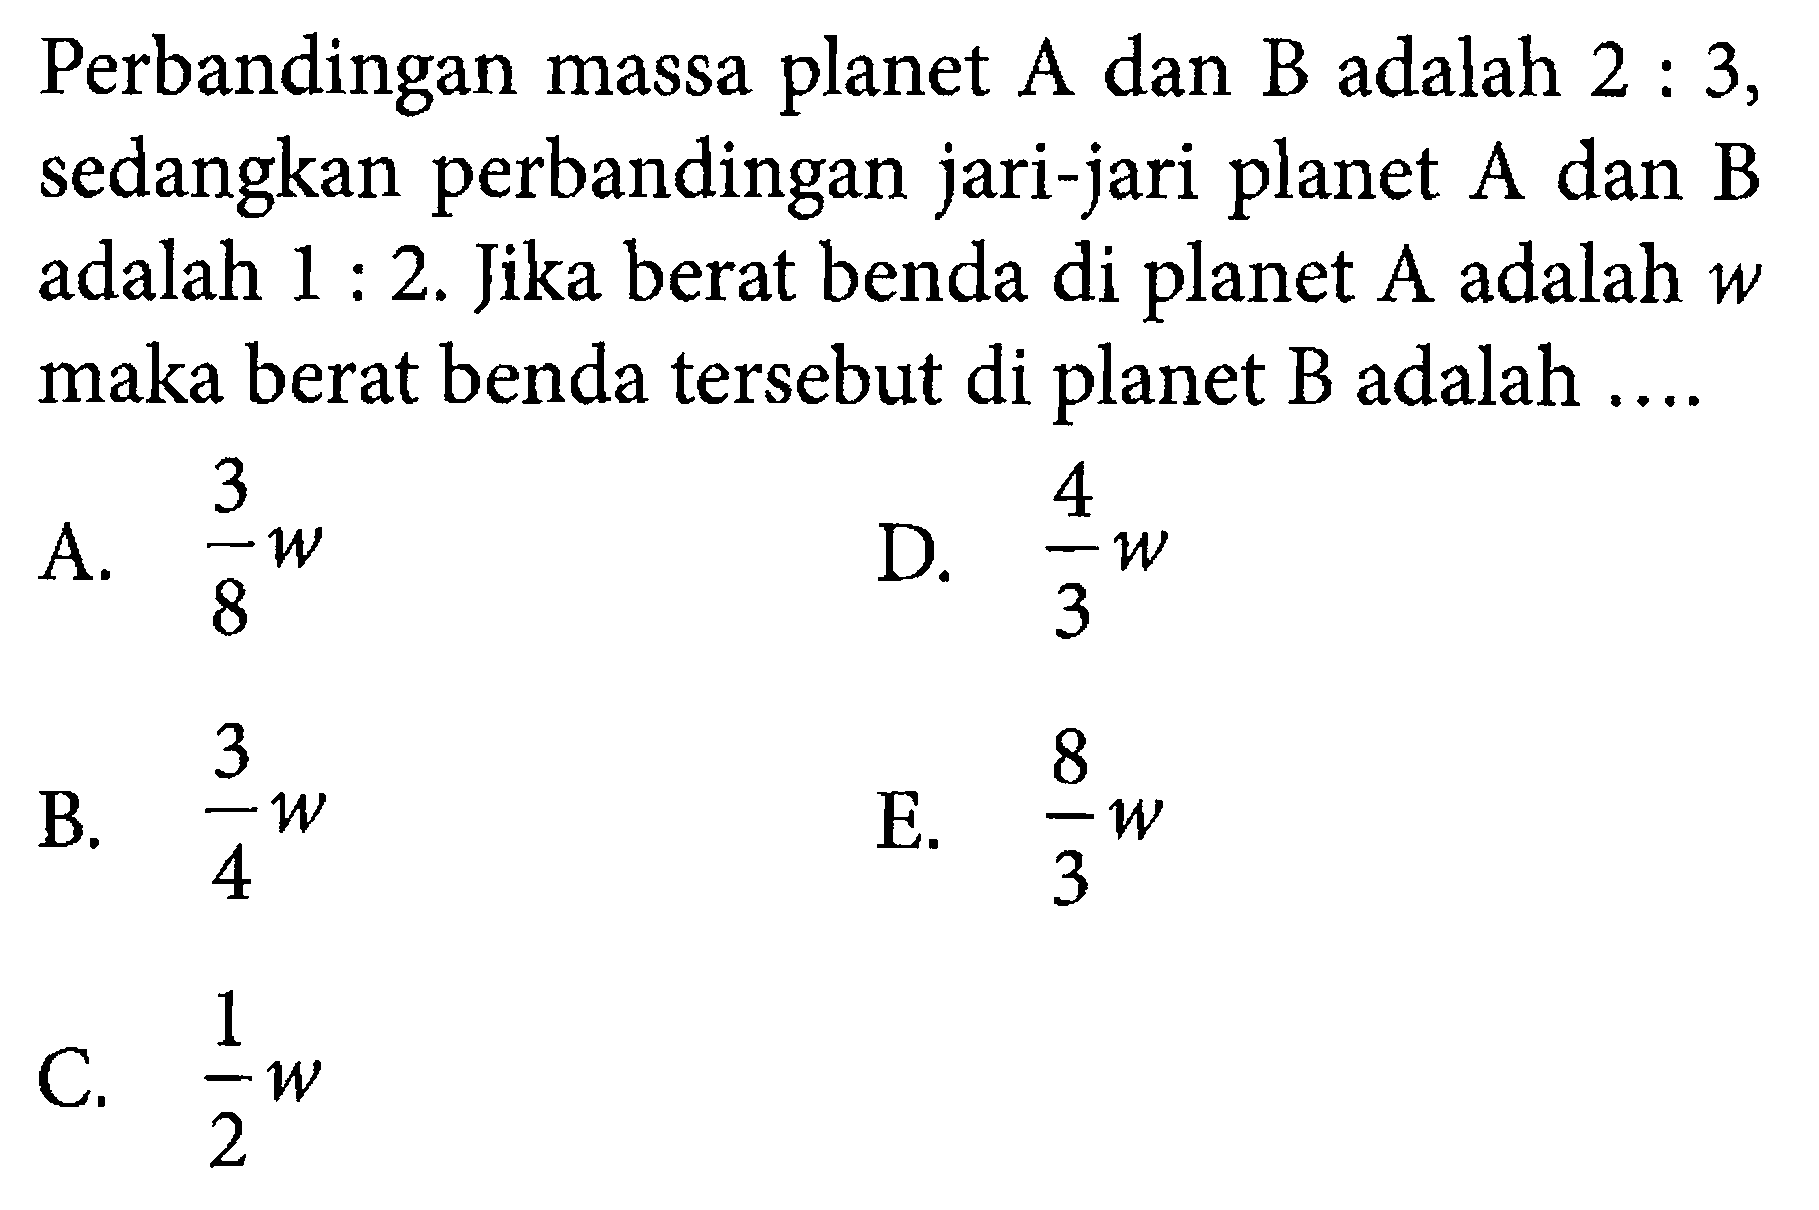 Perbandingan massa planet A dan B adalah 2:3, sedangkan perbandingan jari-jari planet A dan B adalah 1:2. Jika berat benda di planet A adalah w maka berat benda tersebut di planet B adalah...  